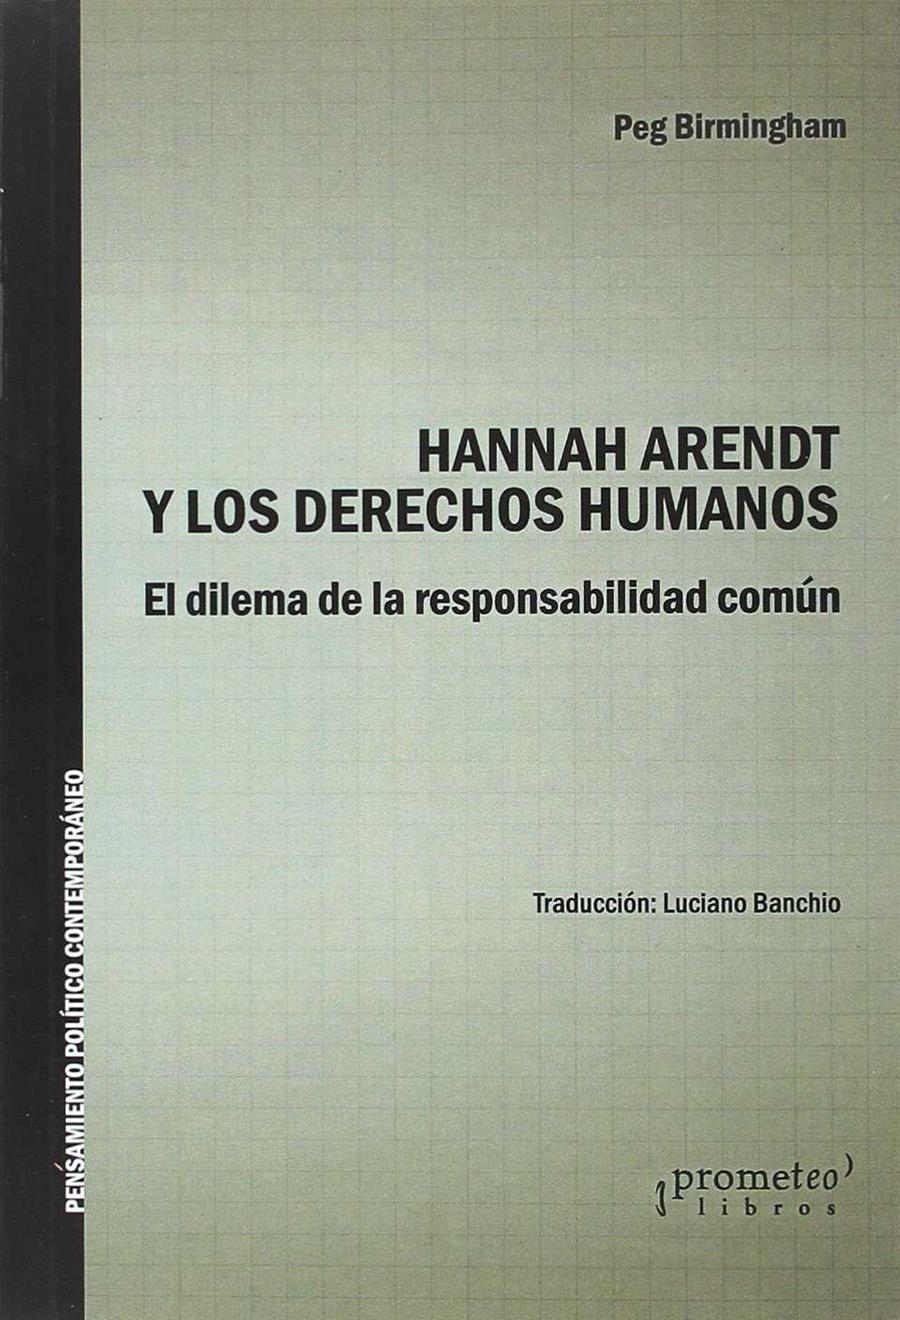 Hannah Arendt y los derechos humanos: El dilema de la responsabilidad común | Birmingham, Peg | Cooperativa autogestionària